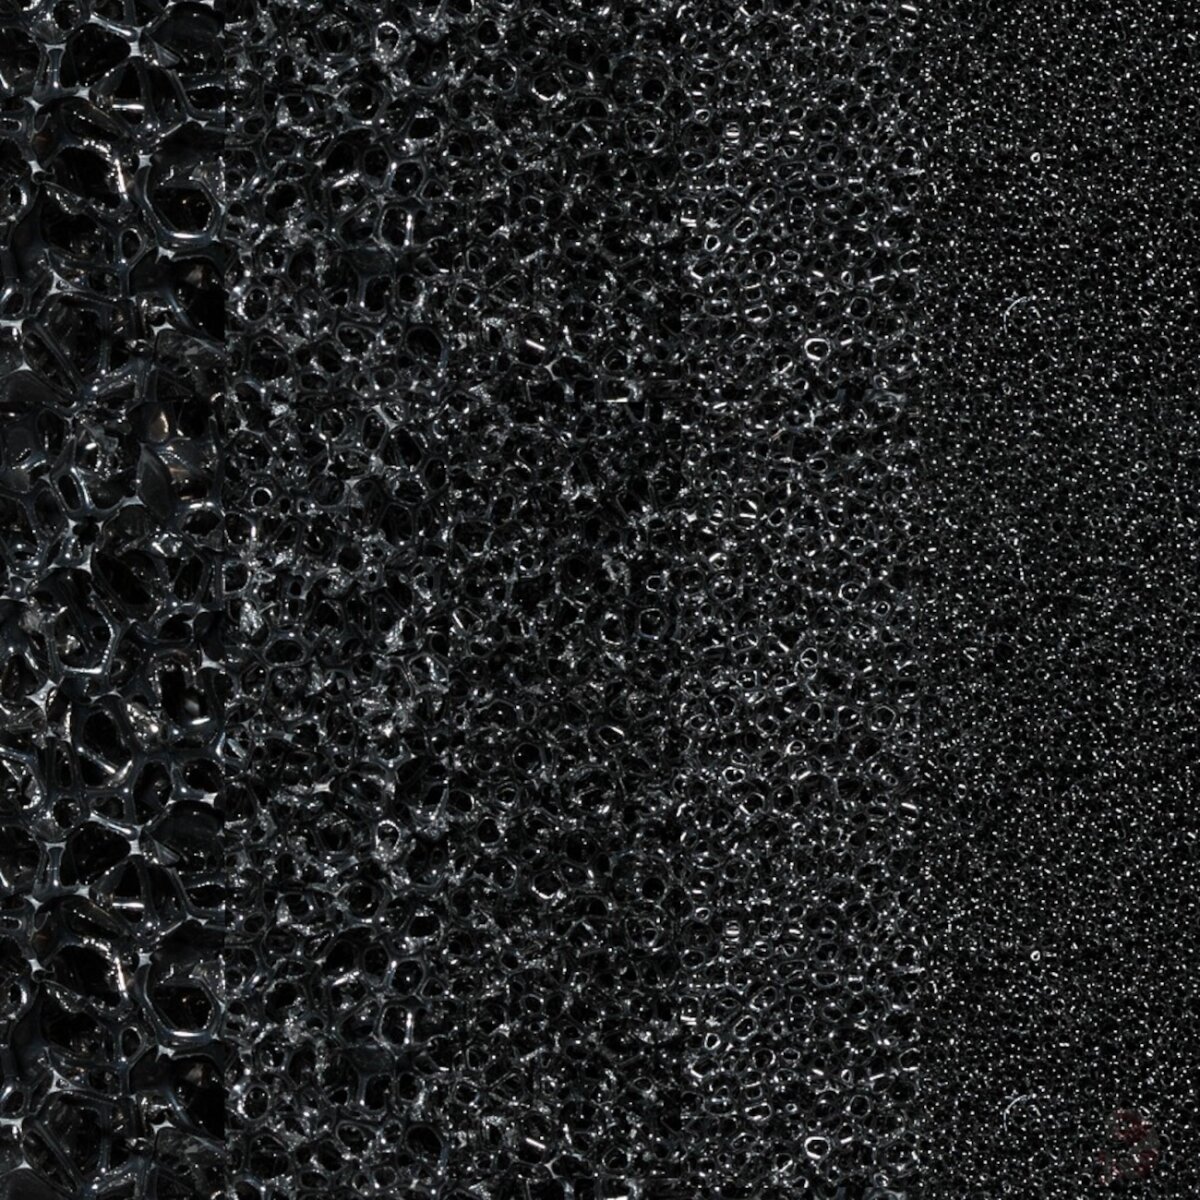 Filtermatte schwarz, 50 x 50 x 5 cm, 10 bis 60 ppi